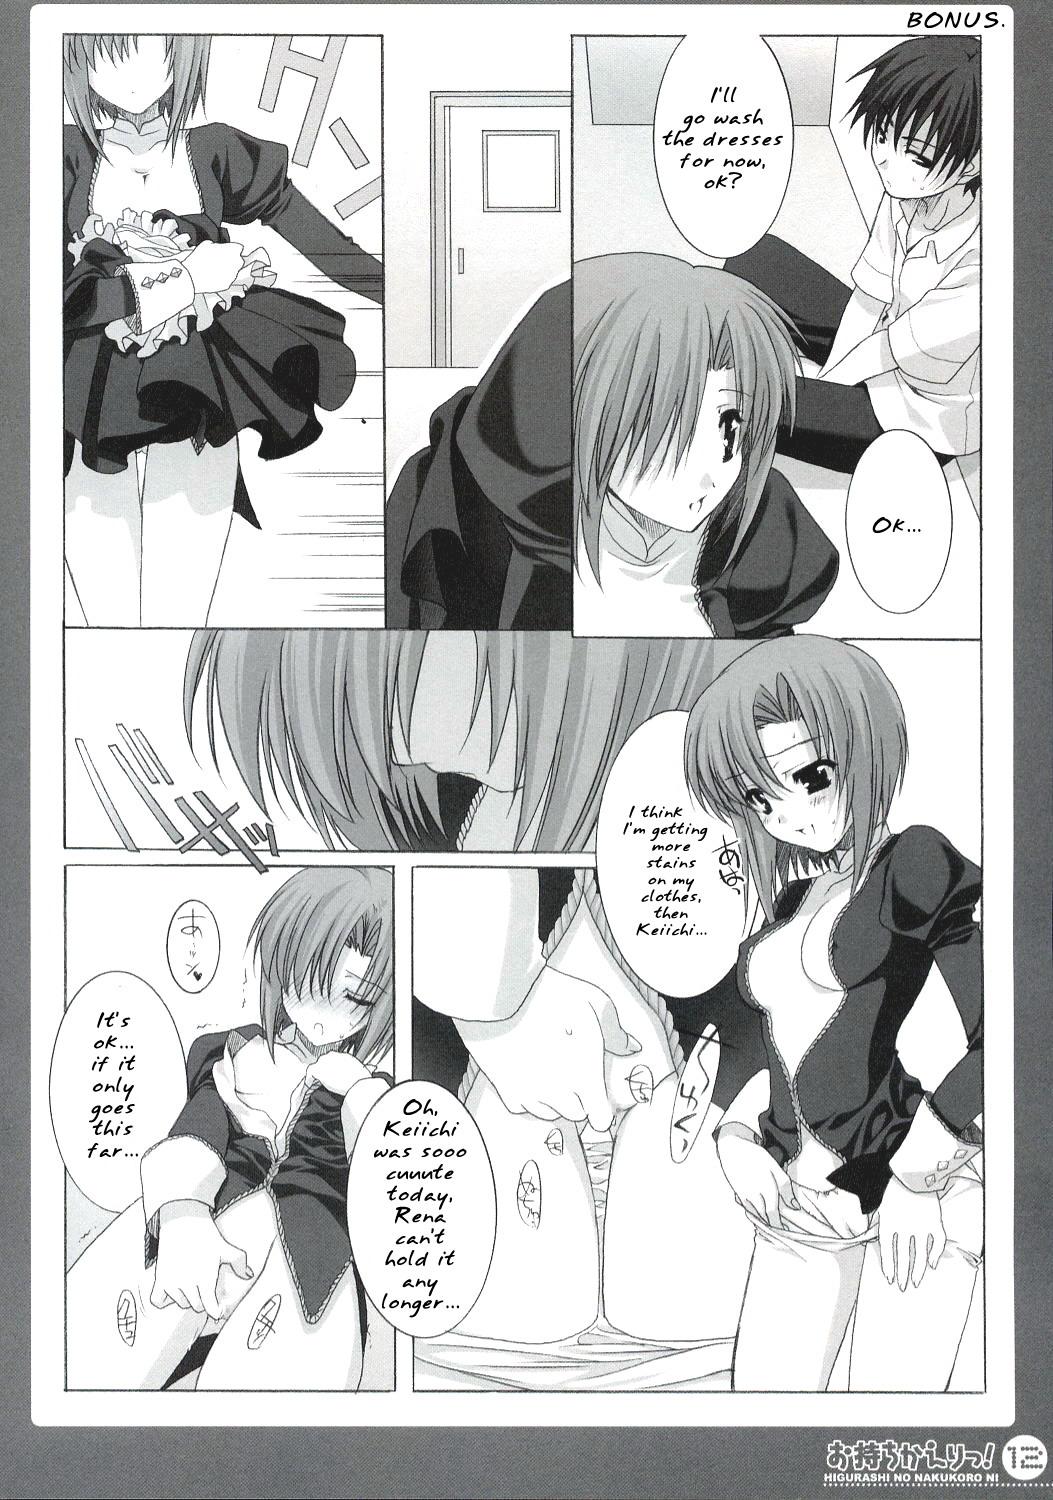 Leather Omochikaeri! - Higurashi no naku koro ni Tats - Page 11